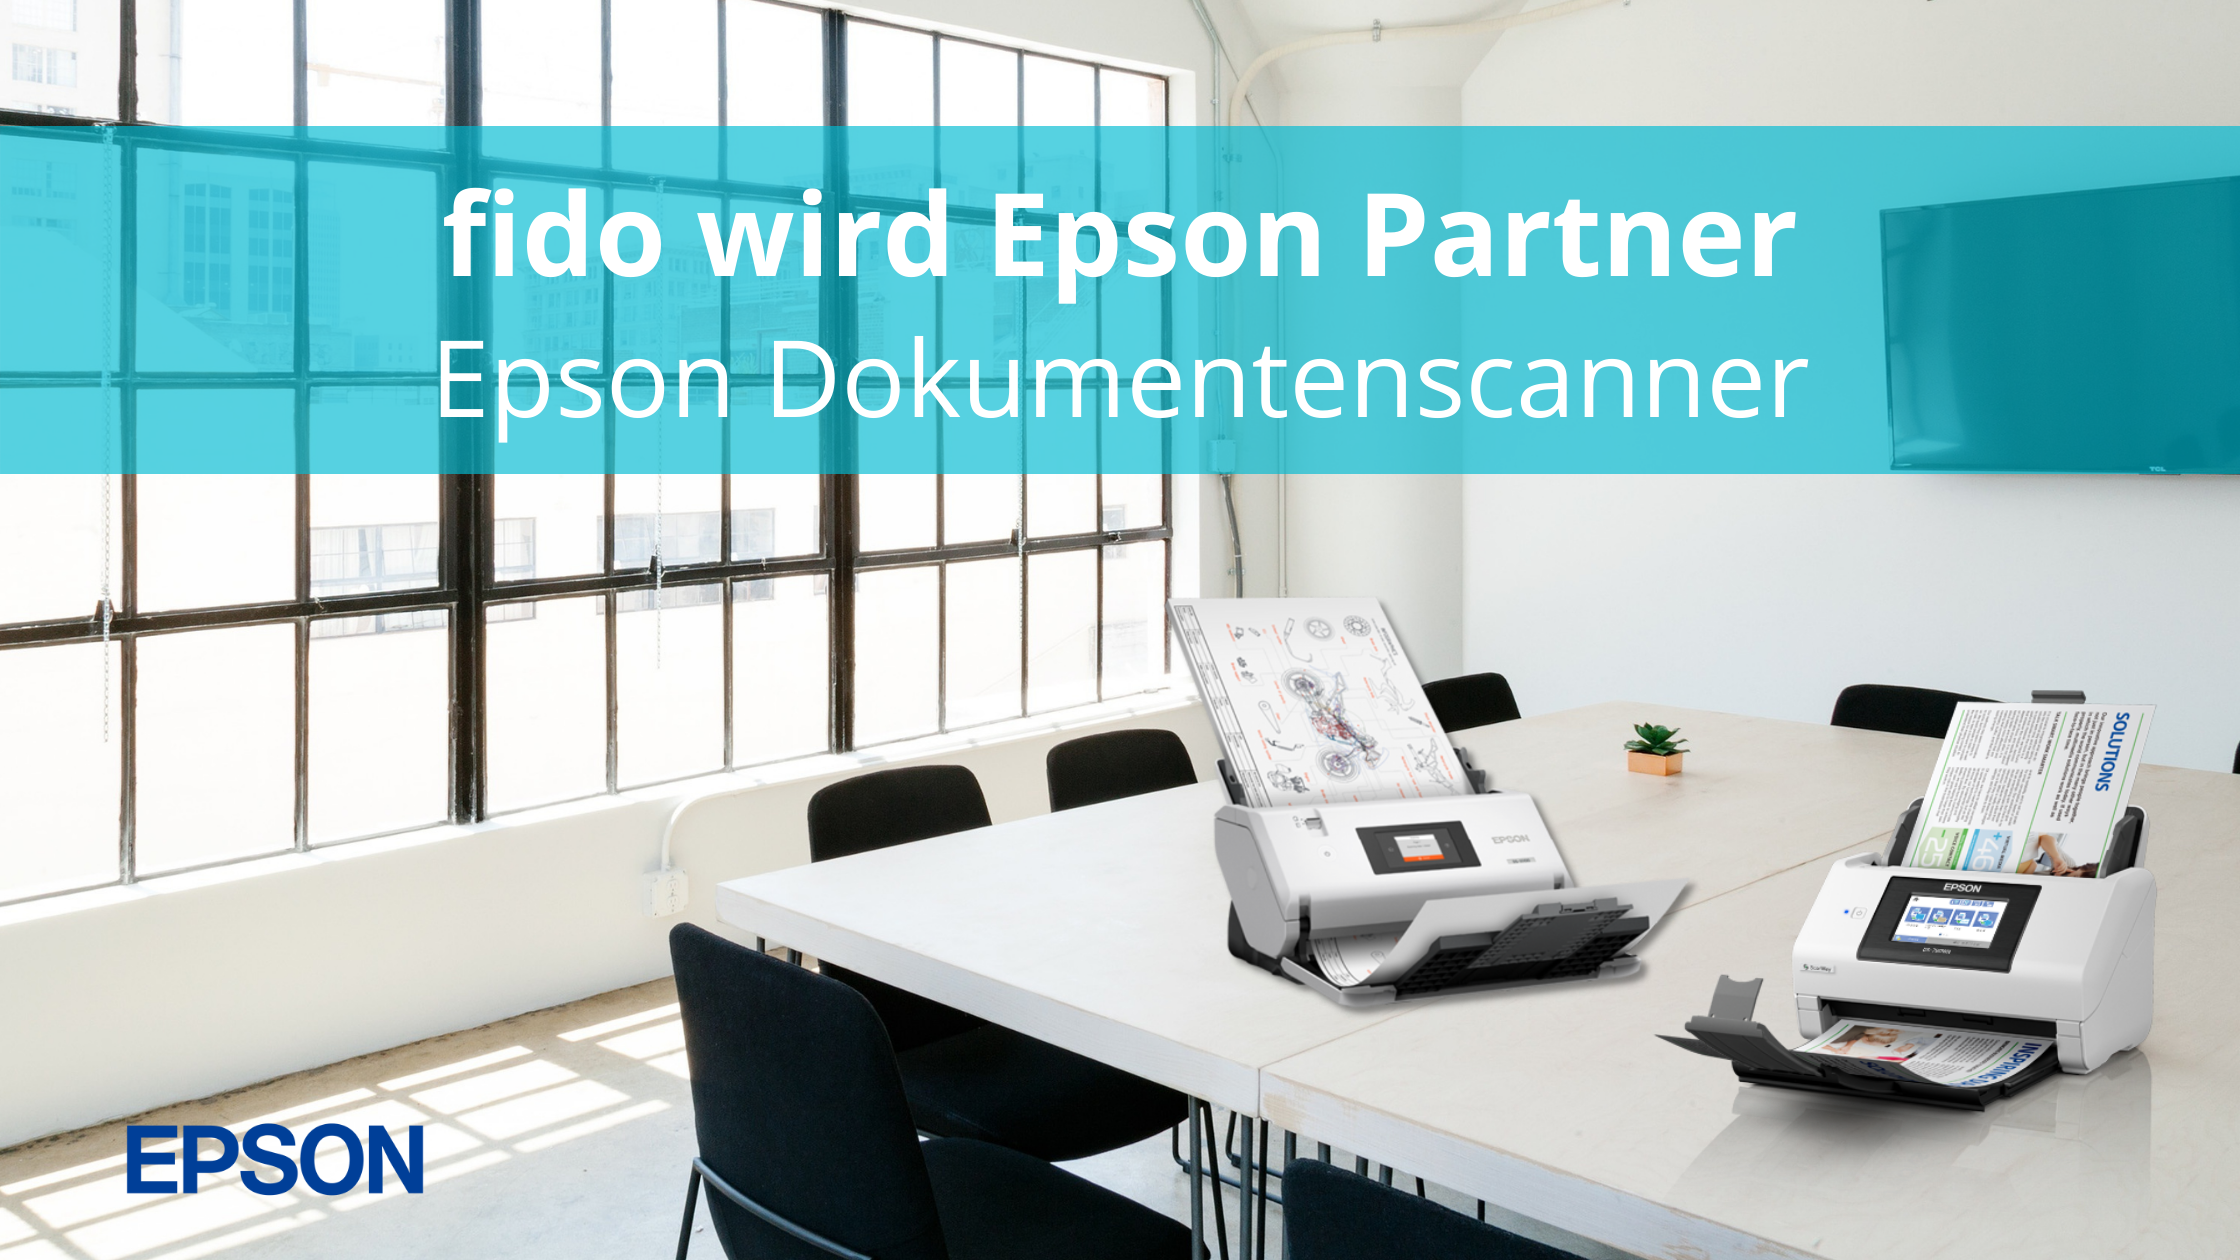 fido wird Epson Händler im Bereich Dokumentenscanner